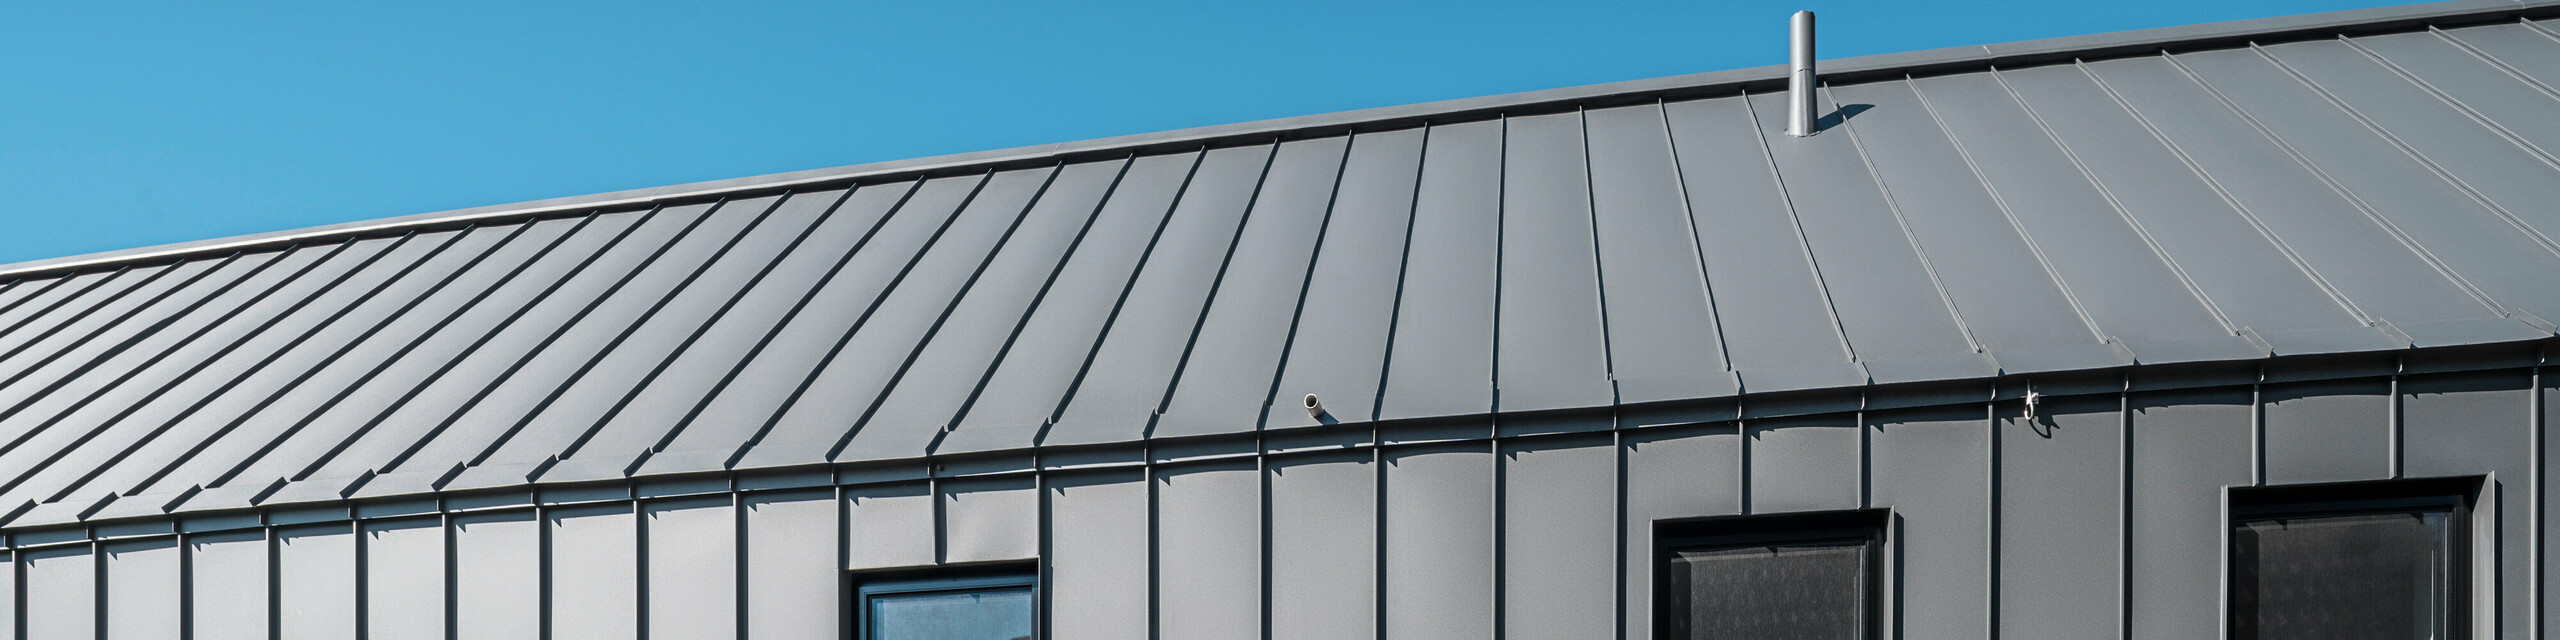 Bočný pohľad na rodinný dom v rakúskom Pogieri s odolným a elegantným zvitkovým plechom PREFALZ v P.10 tmavošedej na streche a fasáde. Hliníkový obklad so stojatou drážkou ponúka čisté vertikálne línie, ktoré elegantne rámujú okná a vytvárajú moderný vzhľad. Minimalistická architektúra stojí pod jasnou modrou oblohou.